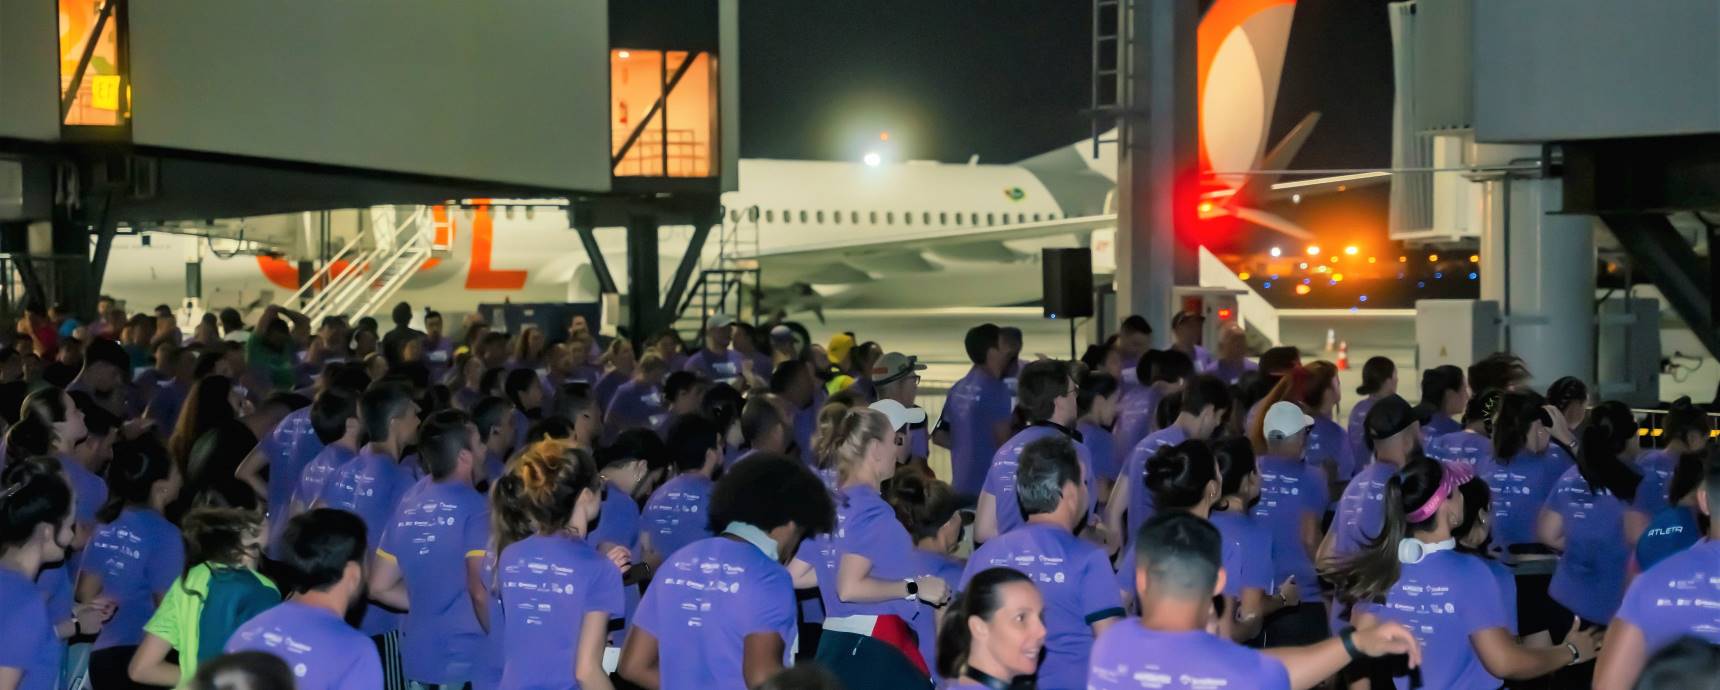 Nachtlauf Floripa Der Flughafen begeistert 1,2 Athleten bei einem beispiellosen Nachtrennen